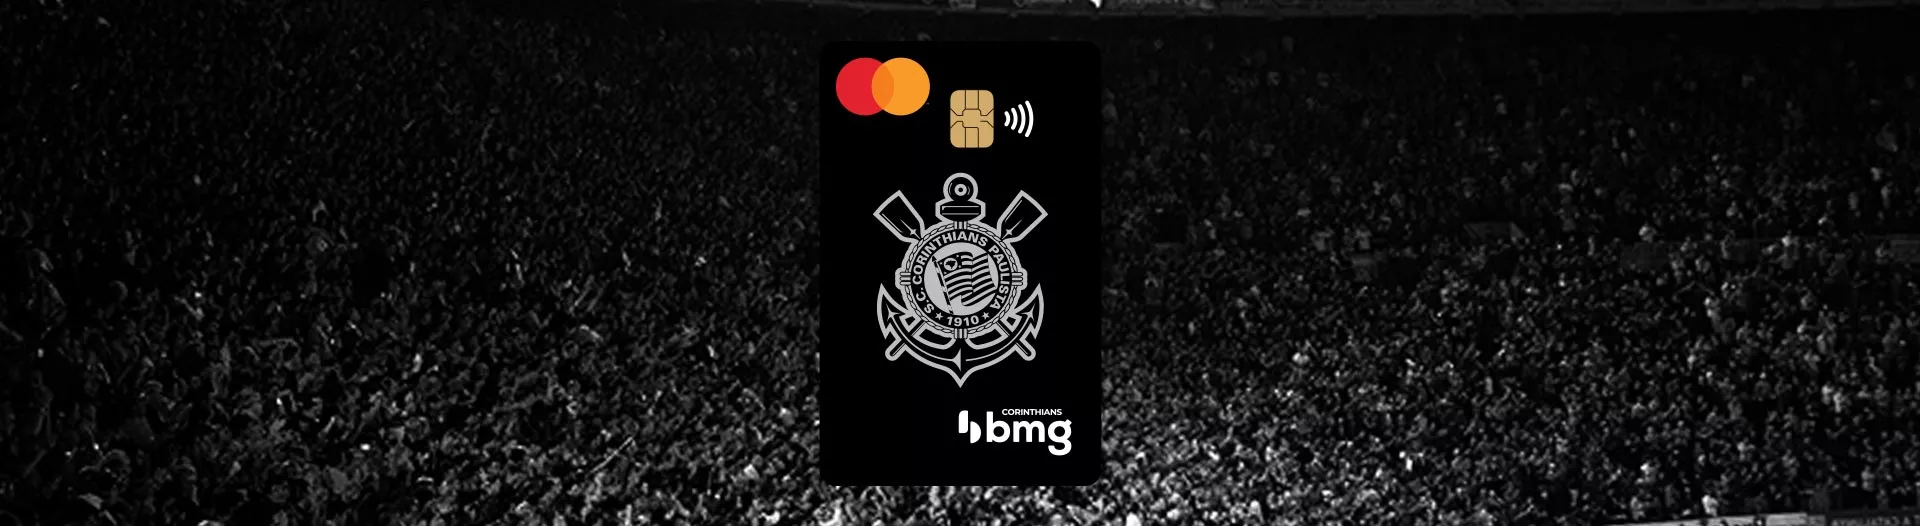 Cartão de crédito do Corinthians Bmg